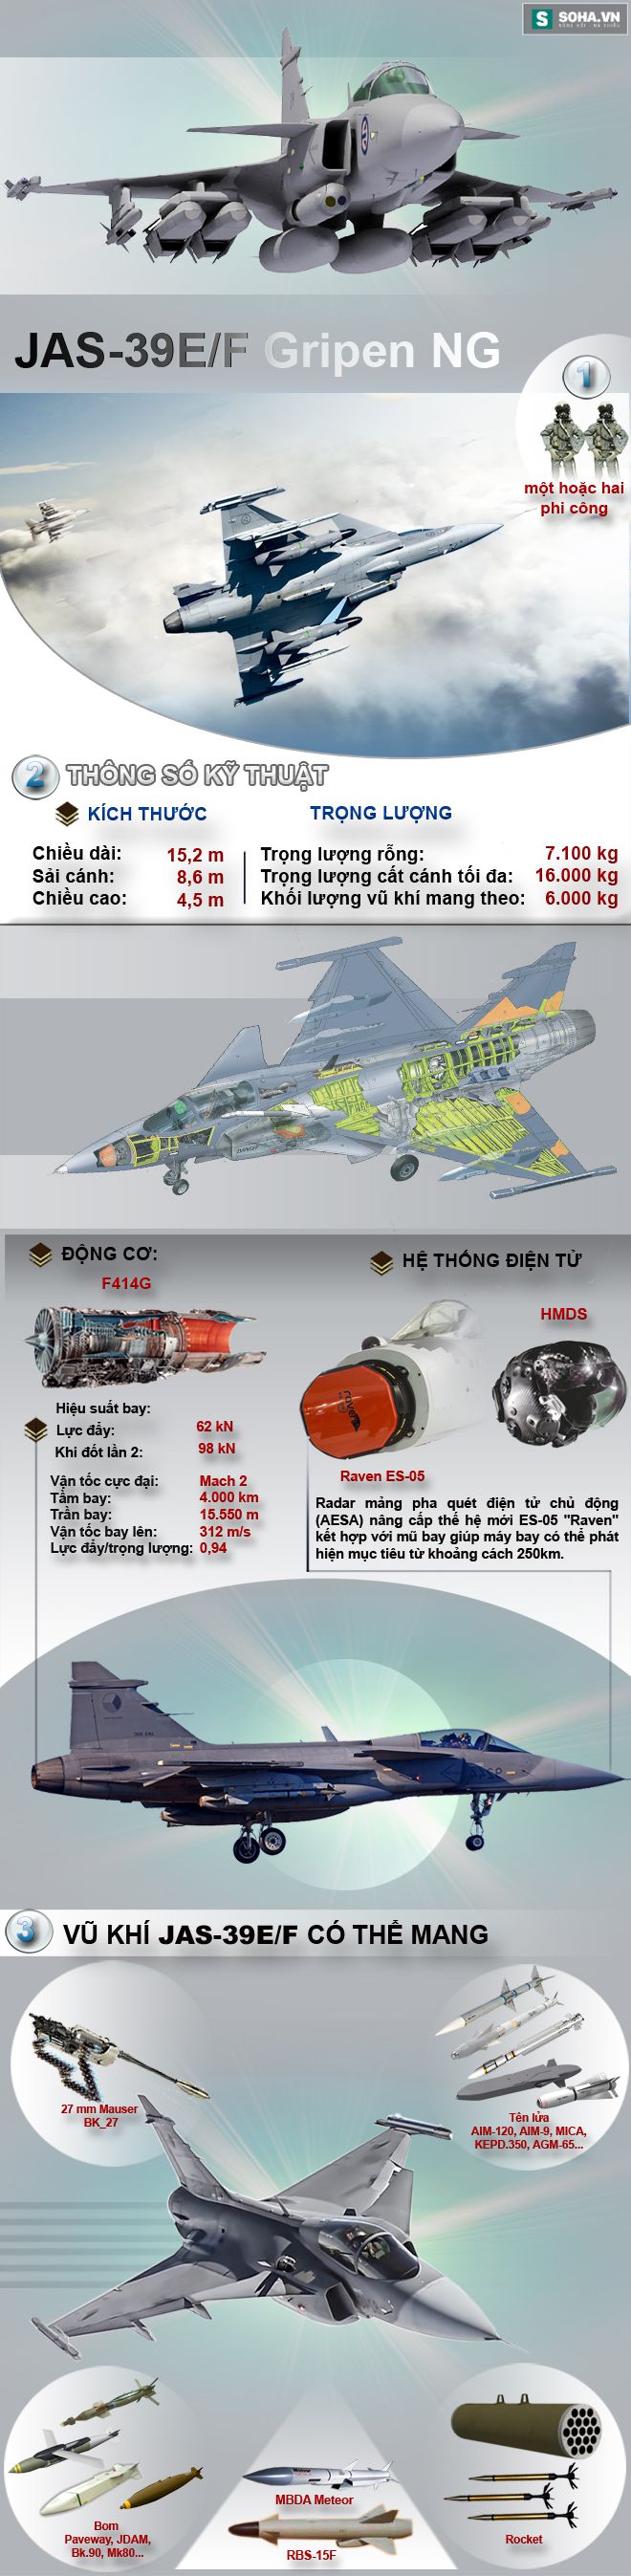 JAS-39E/F Gripen NG sẽ được Việt Nam lựa chọn vào phút chót? - Ảnh 1.